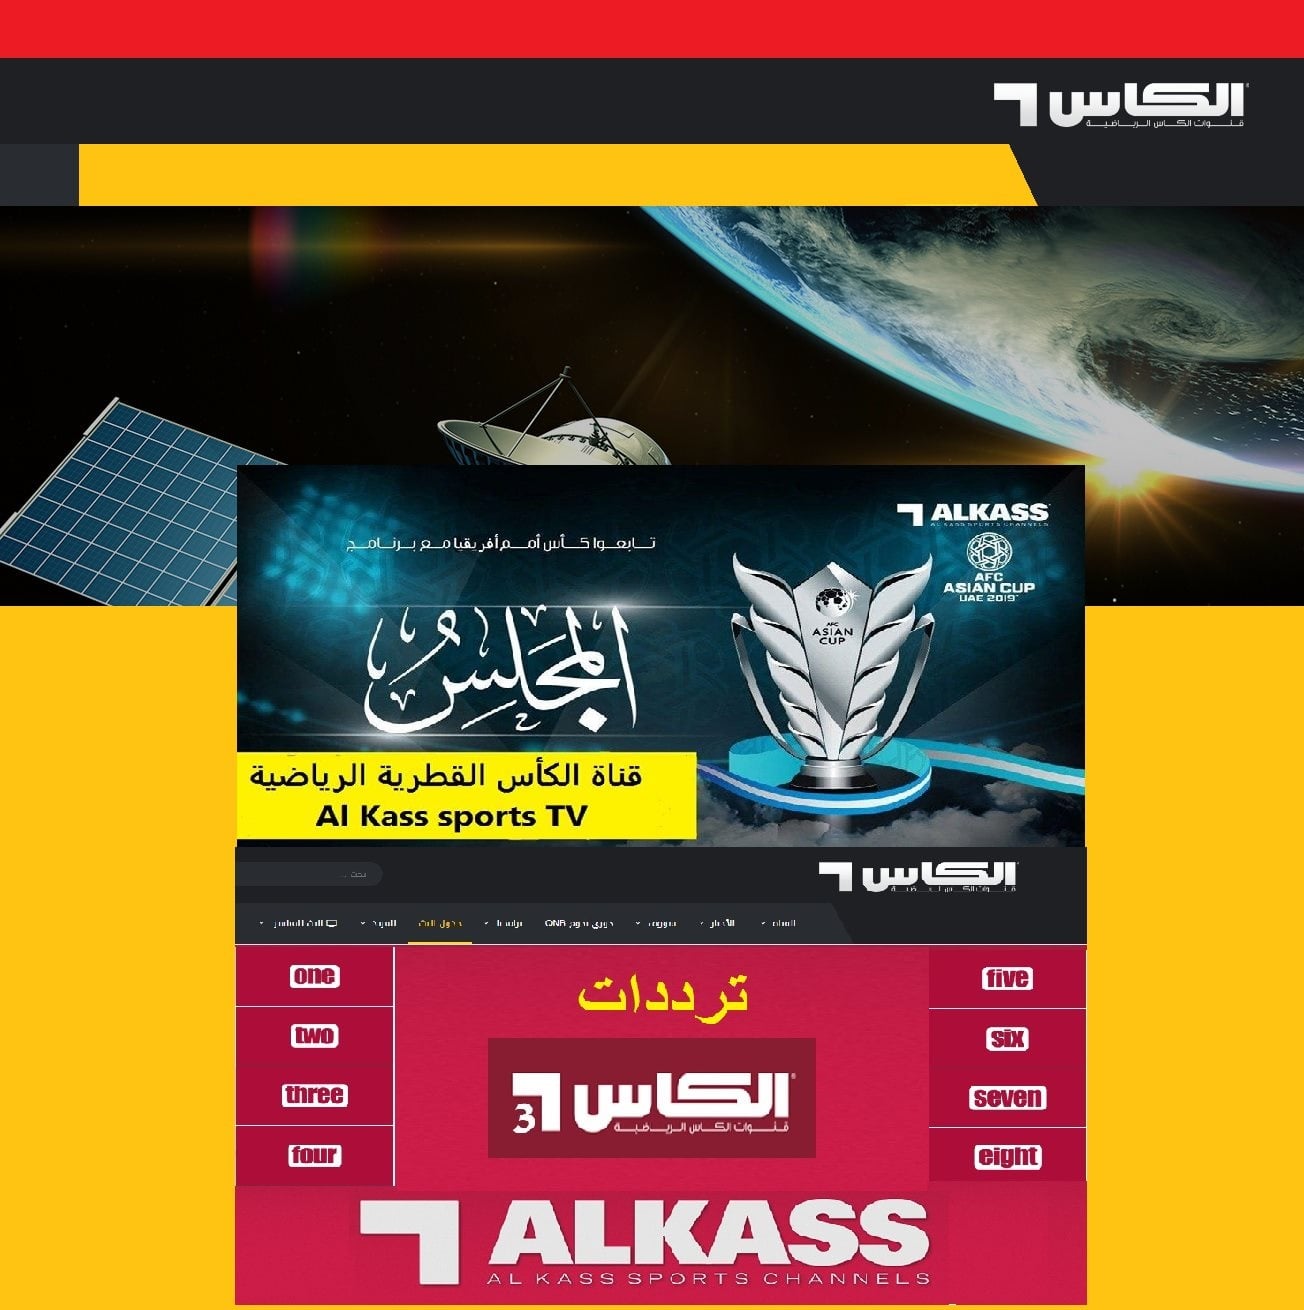 تفاصيل تردد قناة الكأس سبورت الرياضية القطرية 1-2-3-4 Al Kass hd مفتوحة ومجانية نايلسات